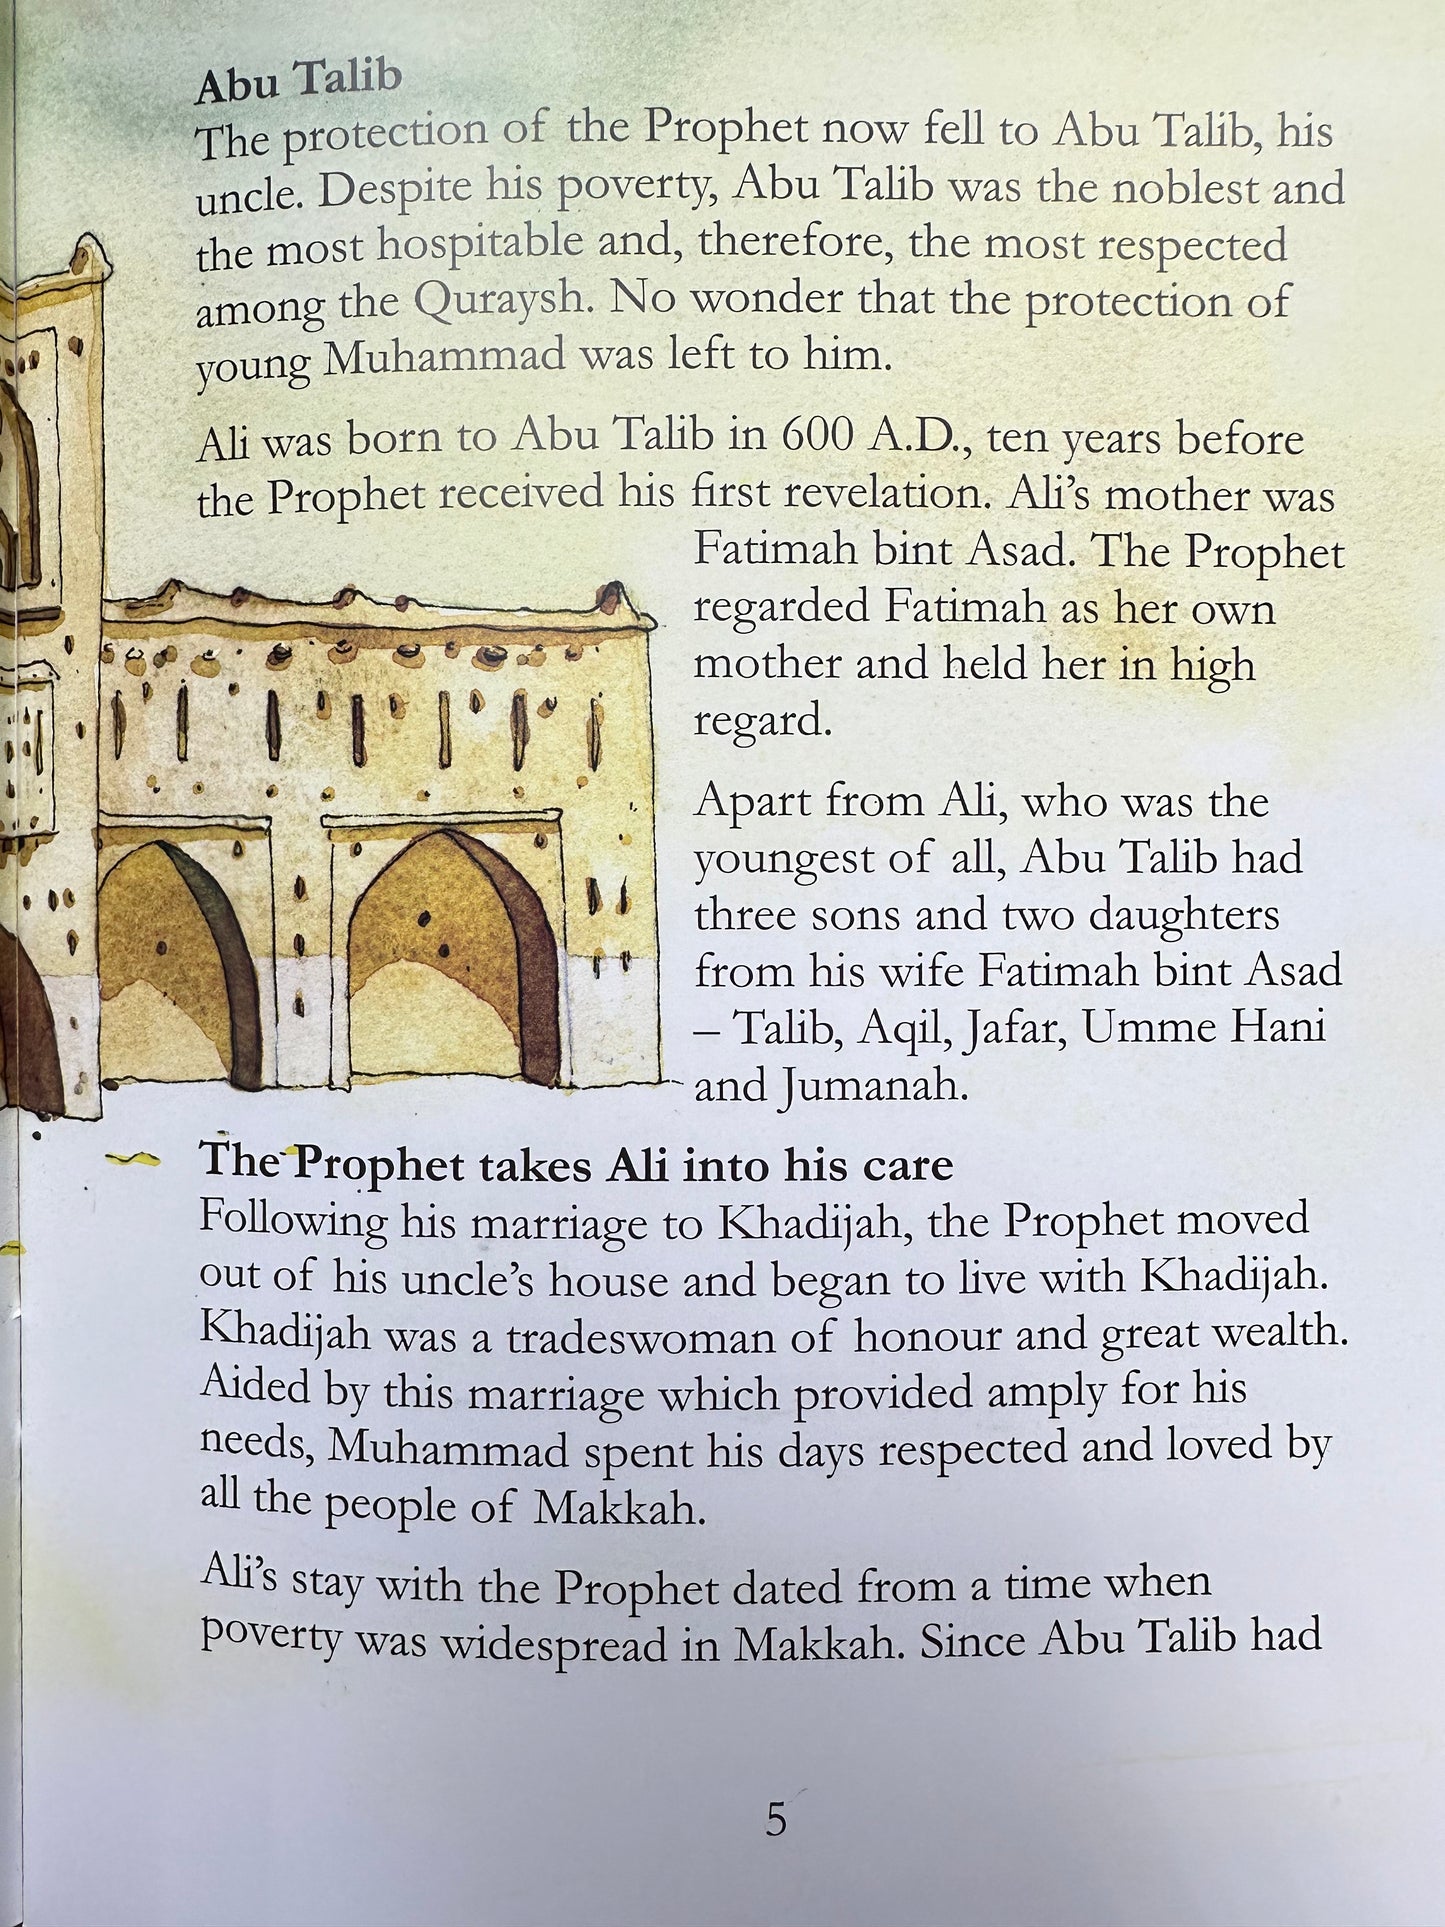 The Story of Ali Ibn Abi Talib